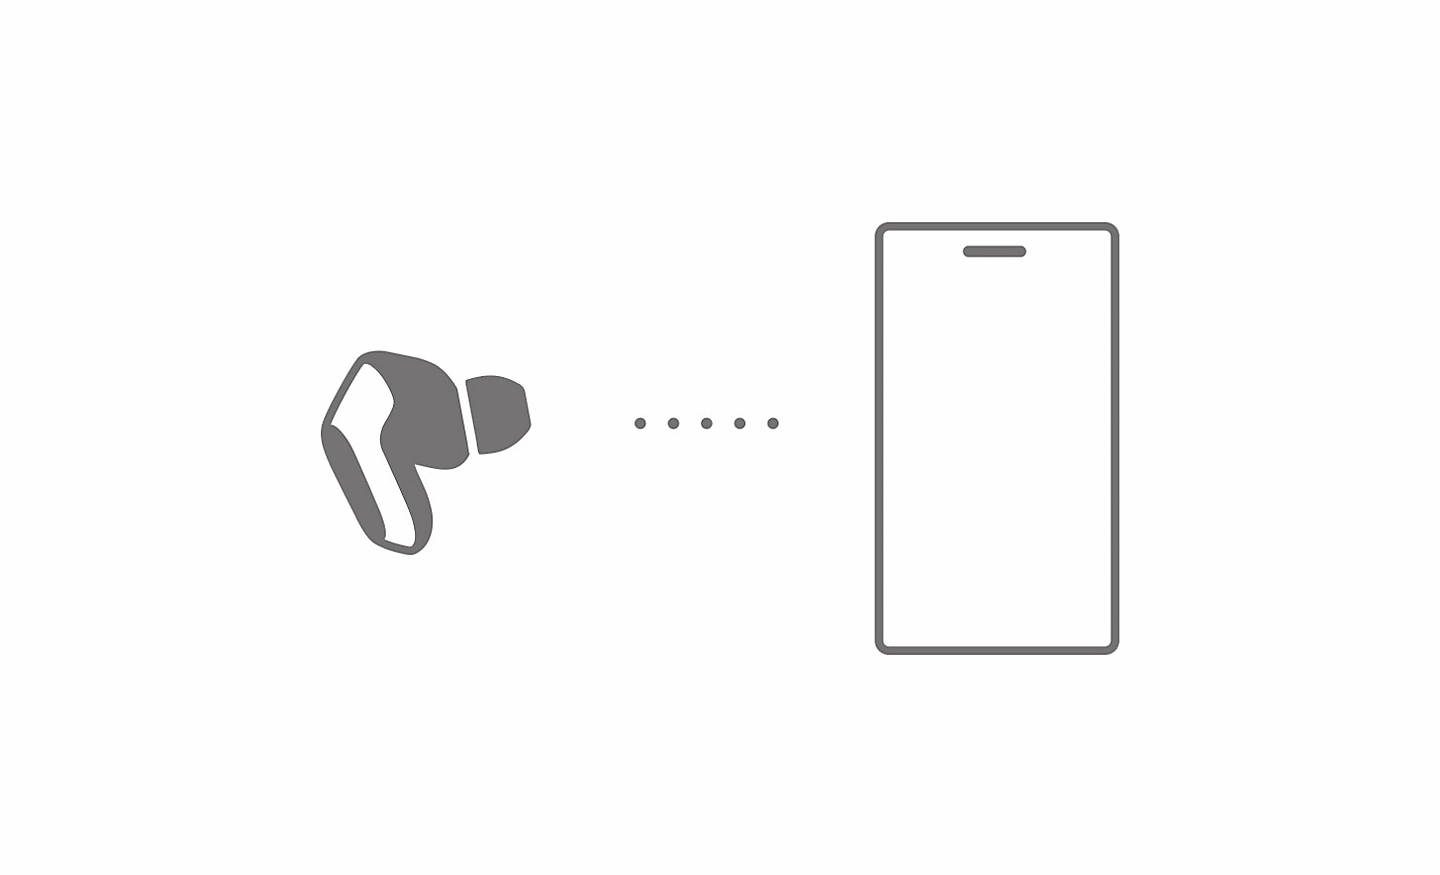 Schéma montrant les écouteurs INZONE Buds connectés à un smartphone via LE Audio